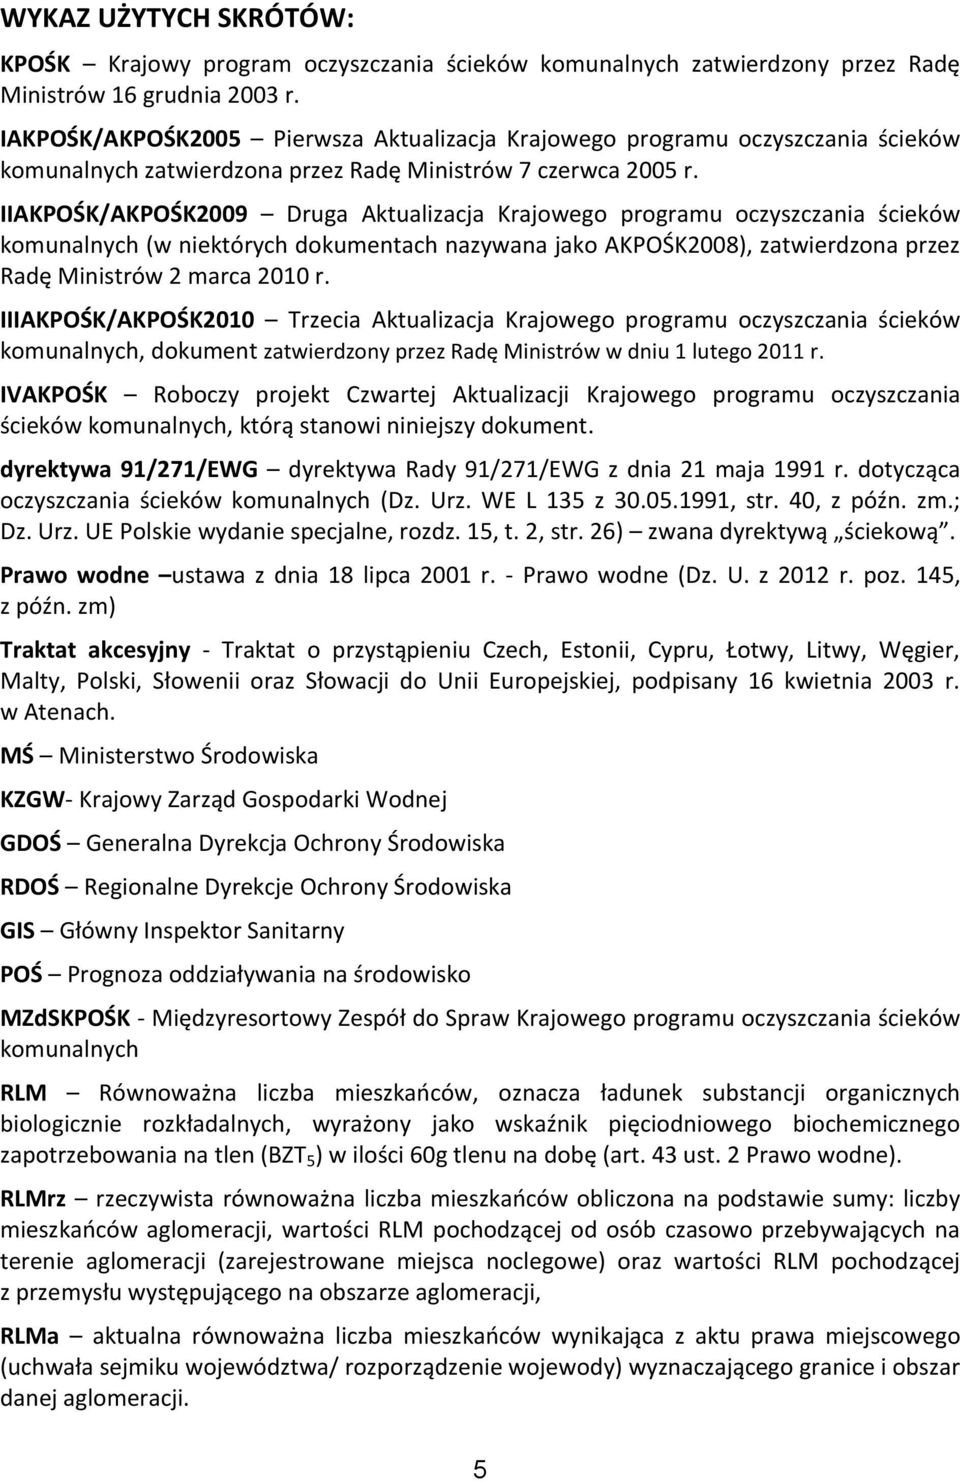 IIAKPOŚK/AKPOŚK2009 Druga Aktualizacja Krajowego programu oczyszczania ścieków komunalnych (w niektórych dokumentach nazywana jako AKPOŚK2008), zatwierdzona przez Radę Ministrów 2 marca 2010 r.